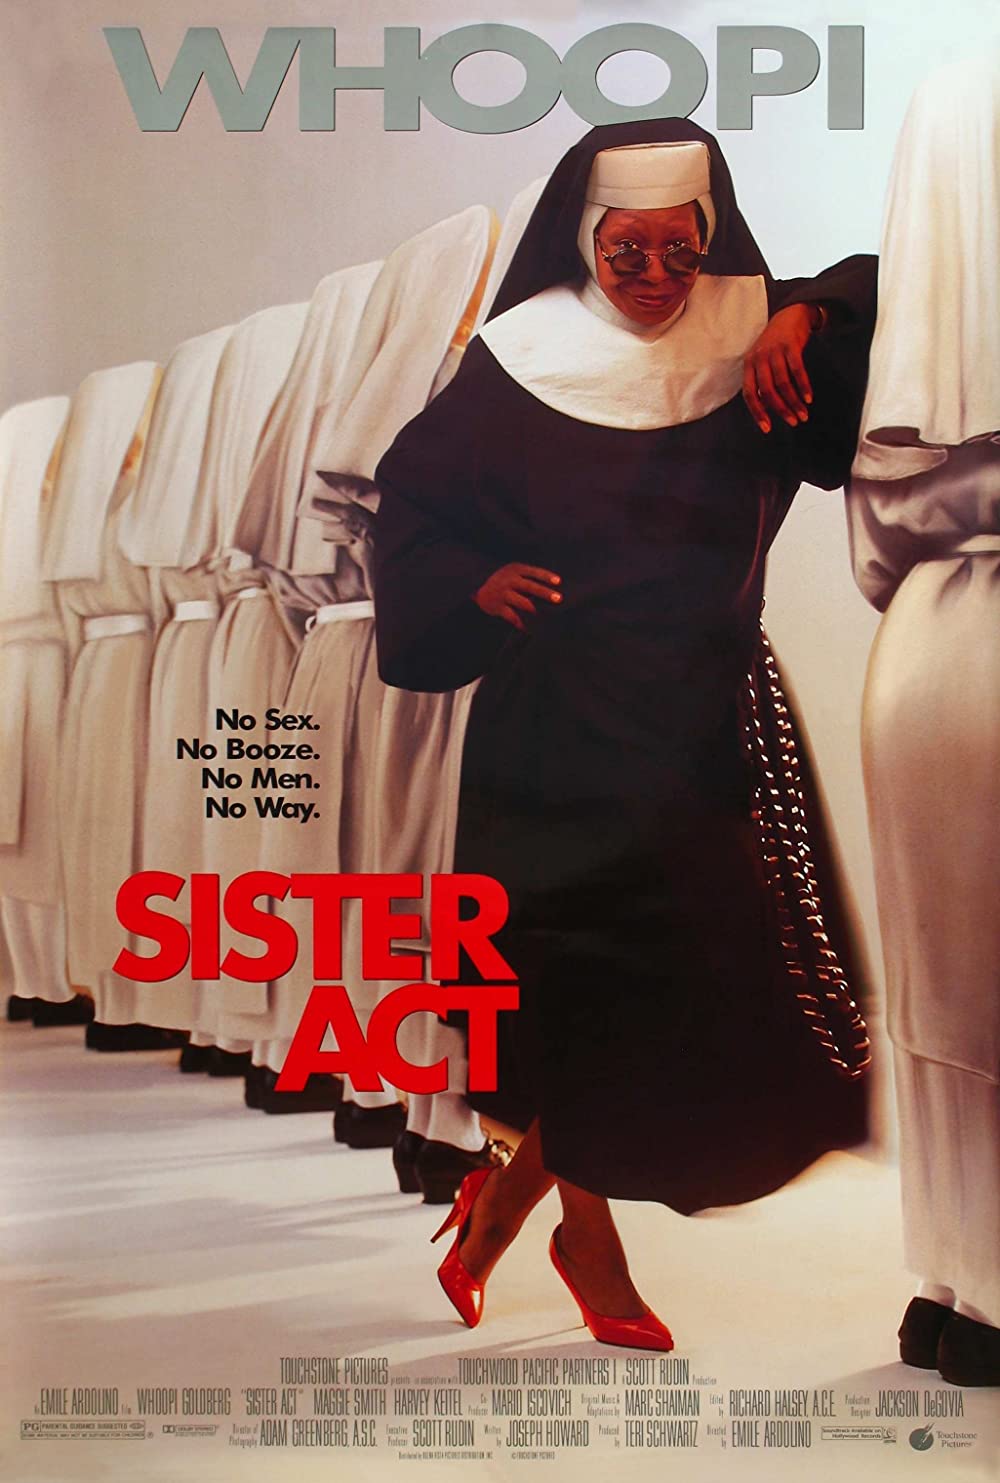 Filmbeschreibung zu Sister Act